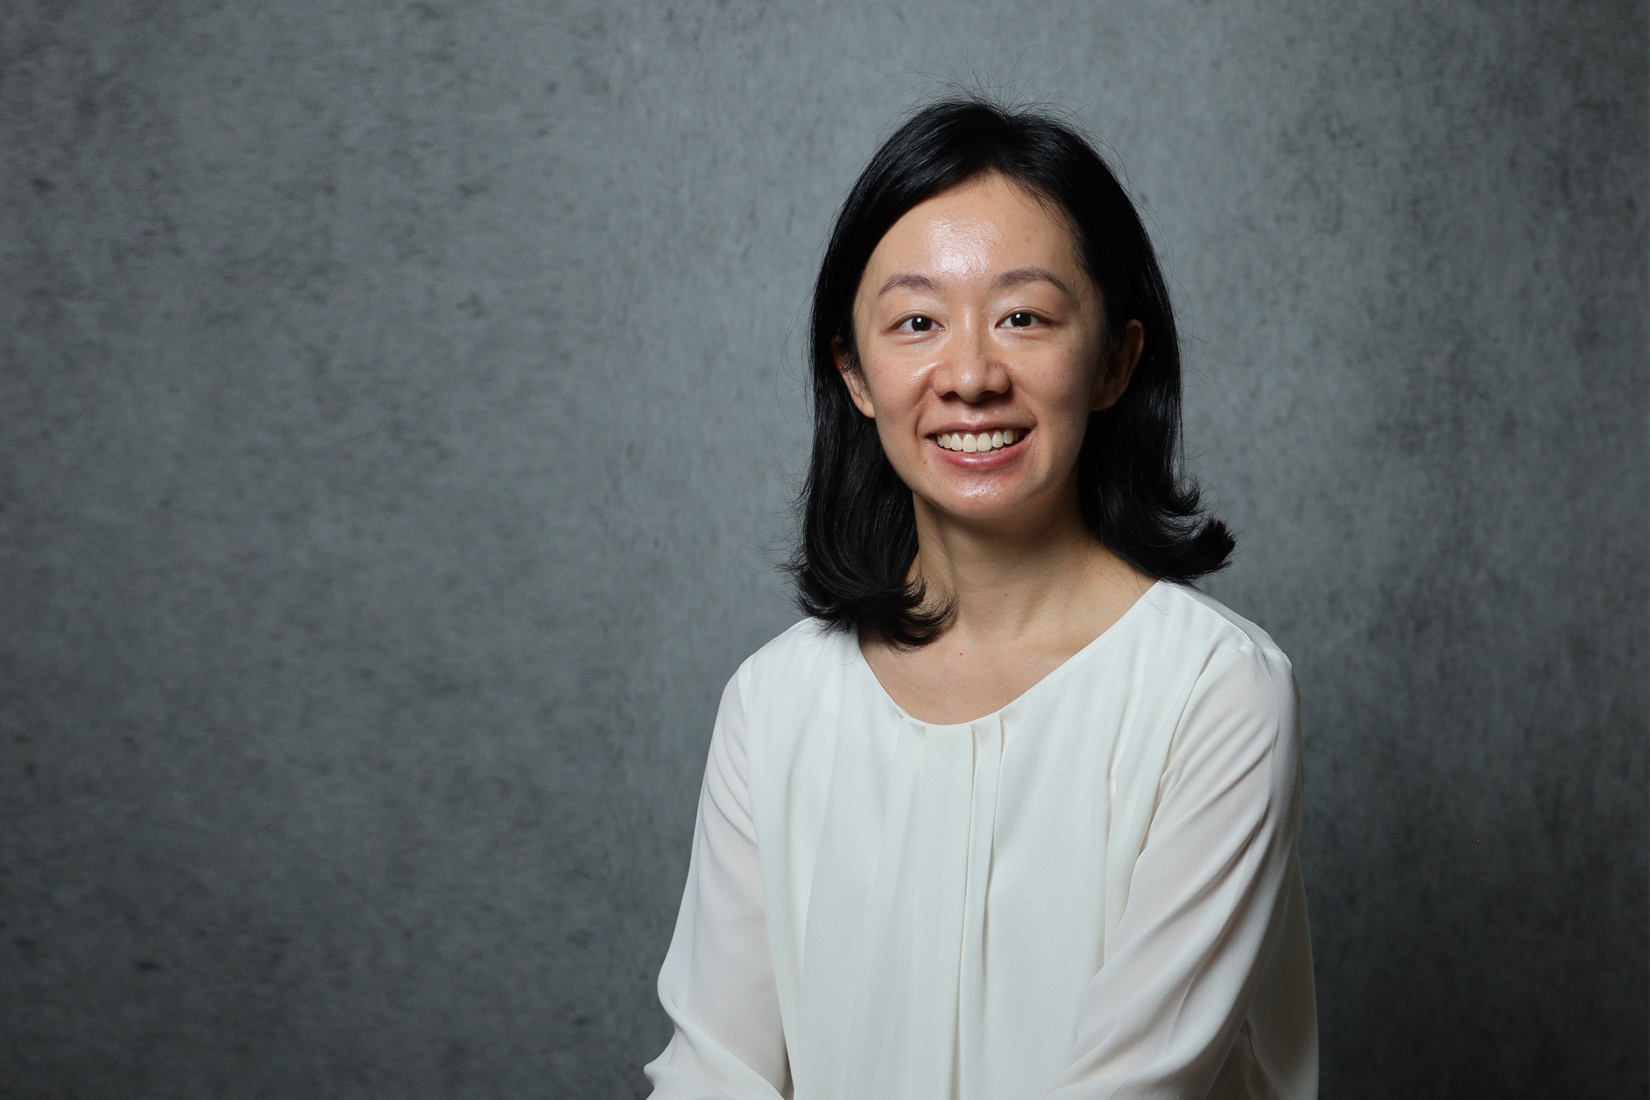 Founder of Blue Sky Energy Tech, Christina Tang